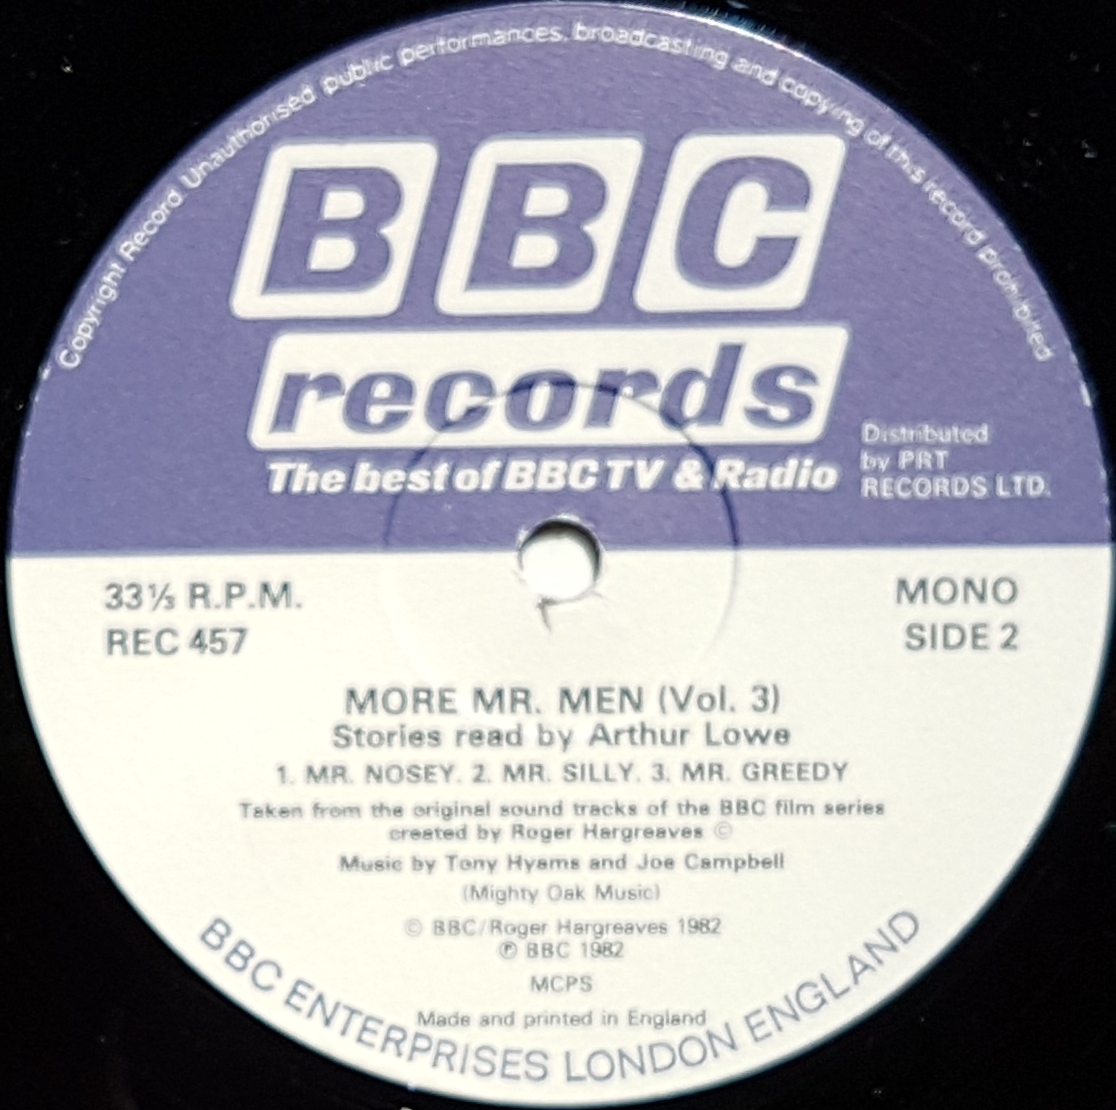 BBC TS2 label